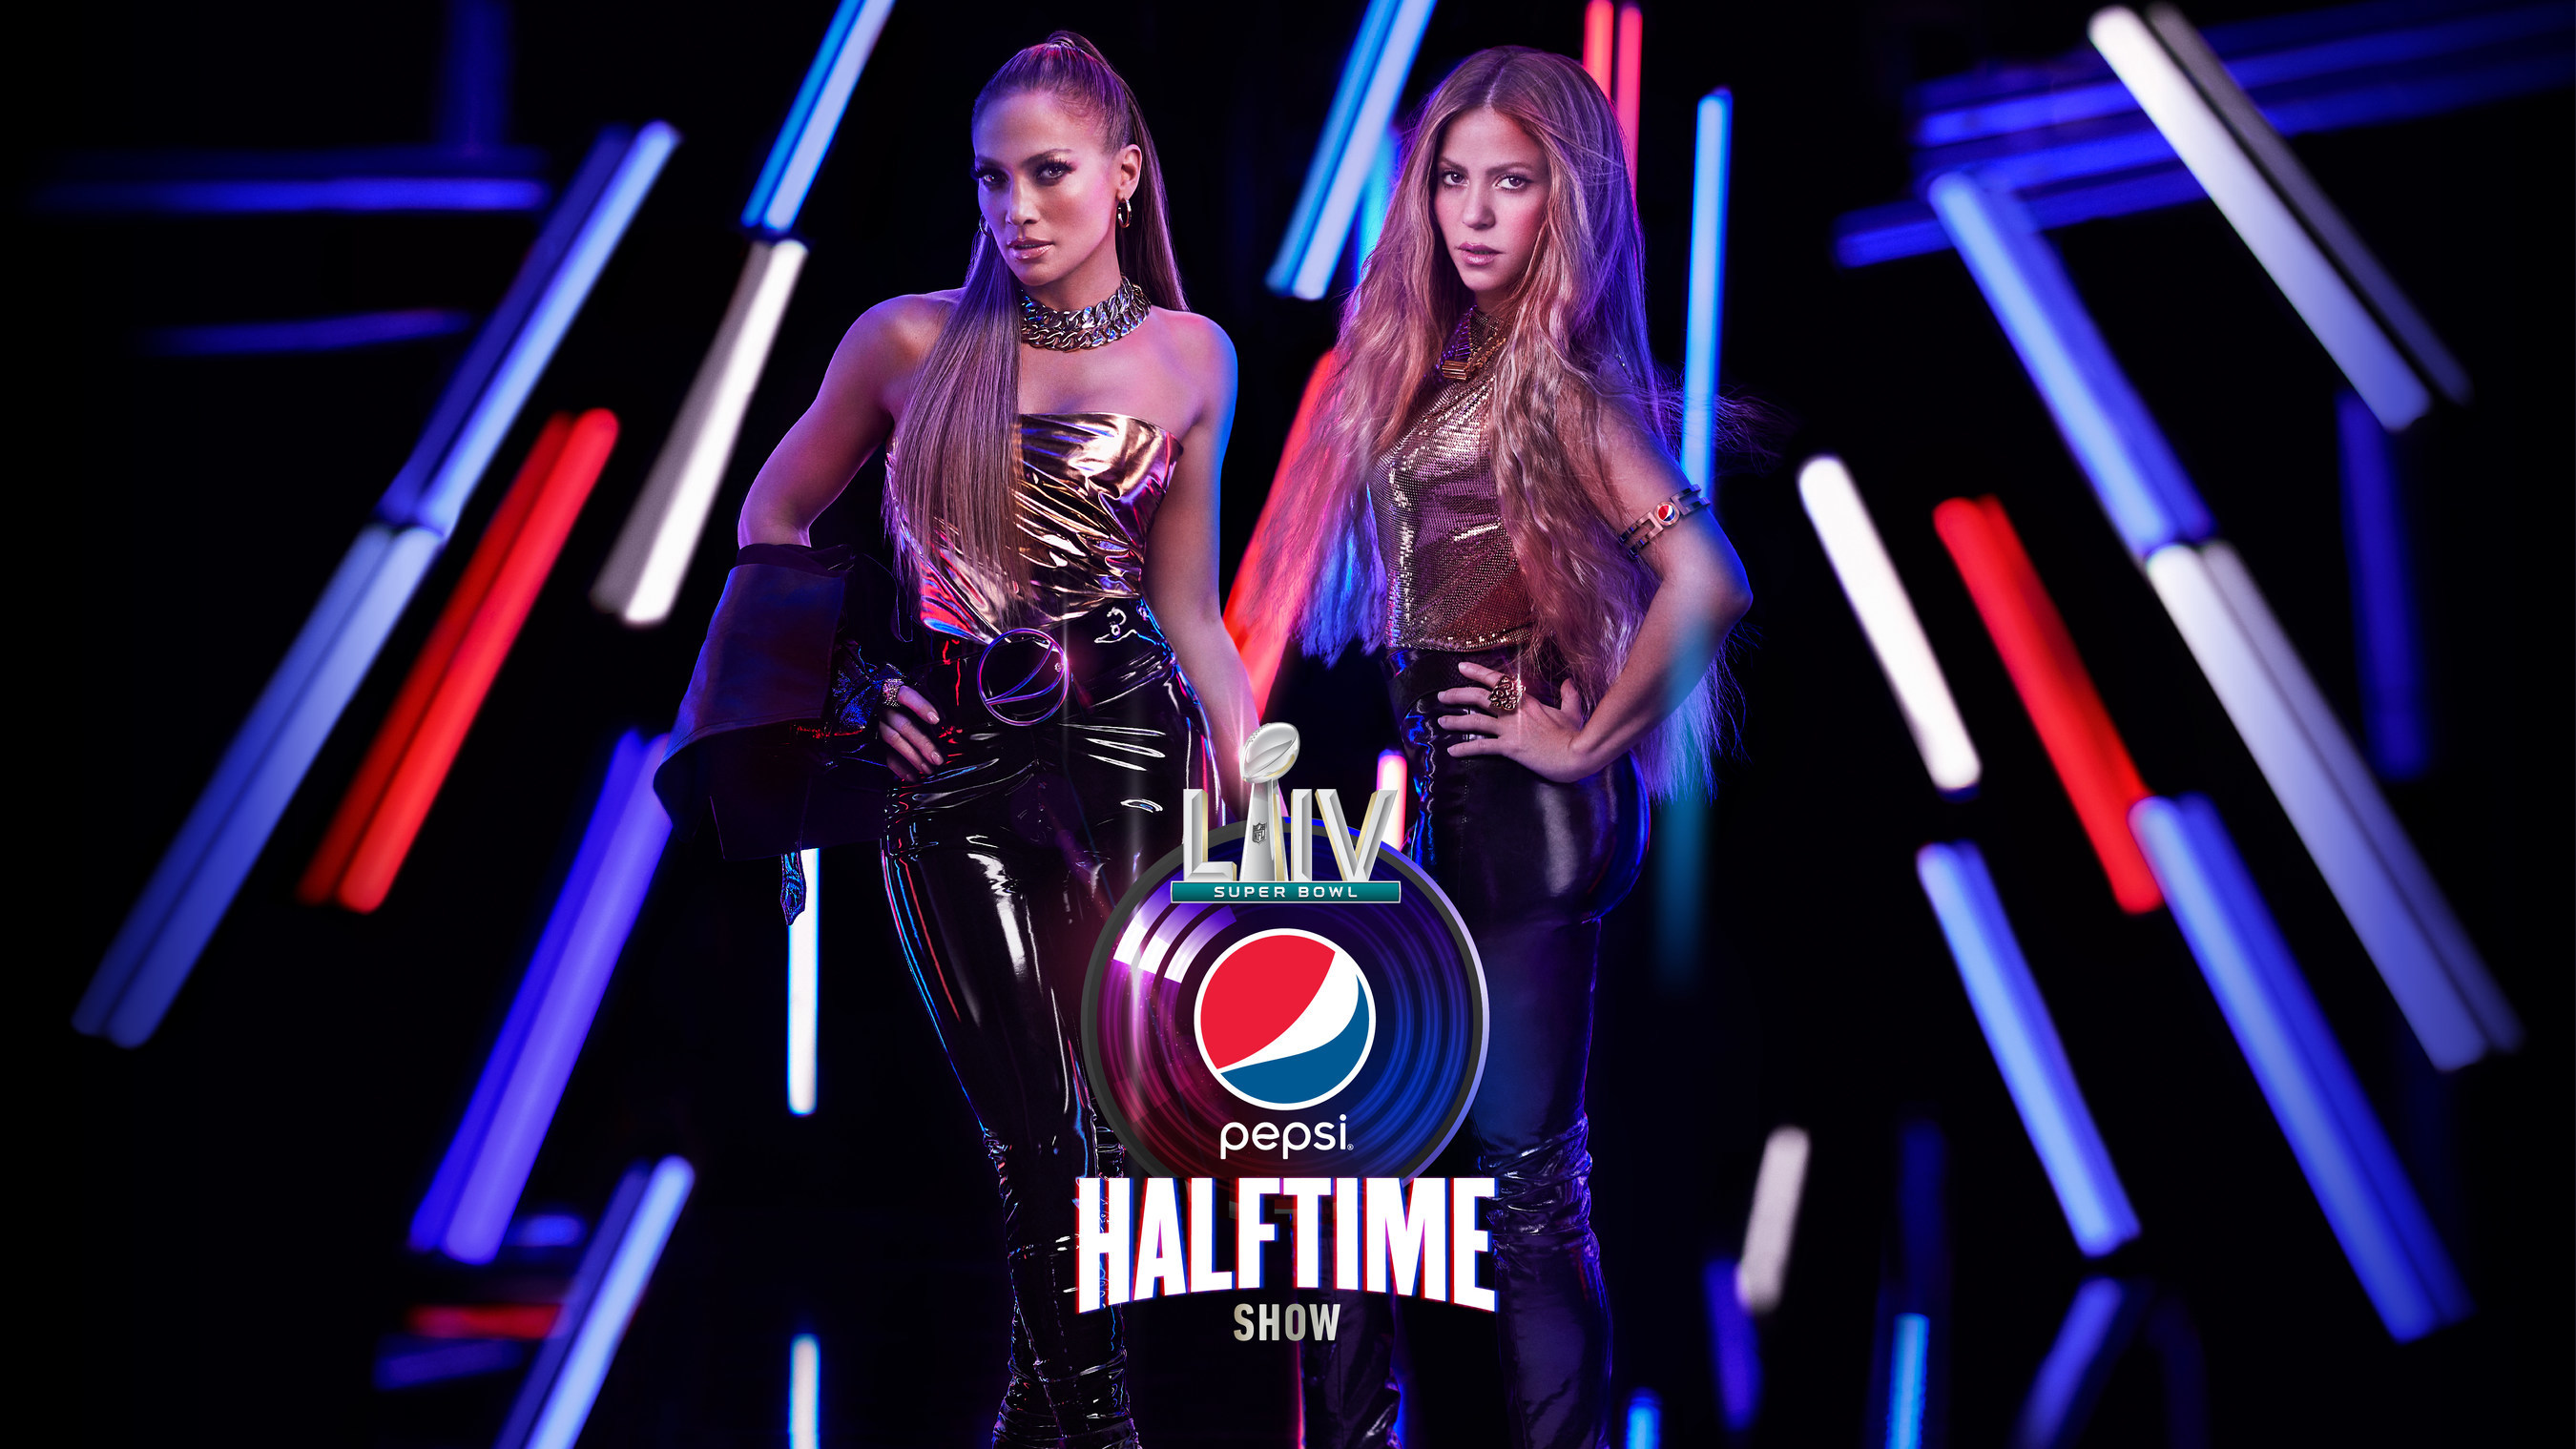 Las superestrellas Jennifer López y Shakira actuarán durante el Espectáculo  del Medio Tiempo del Super Bowl LIV Pepsi el domingo 2 de febrero de 2020  en FOX